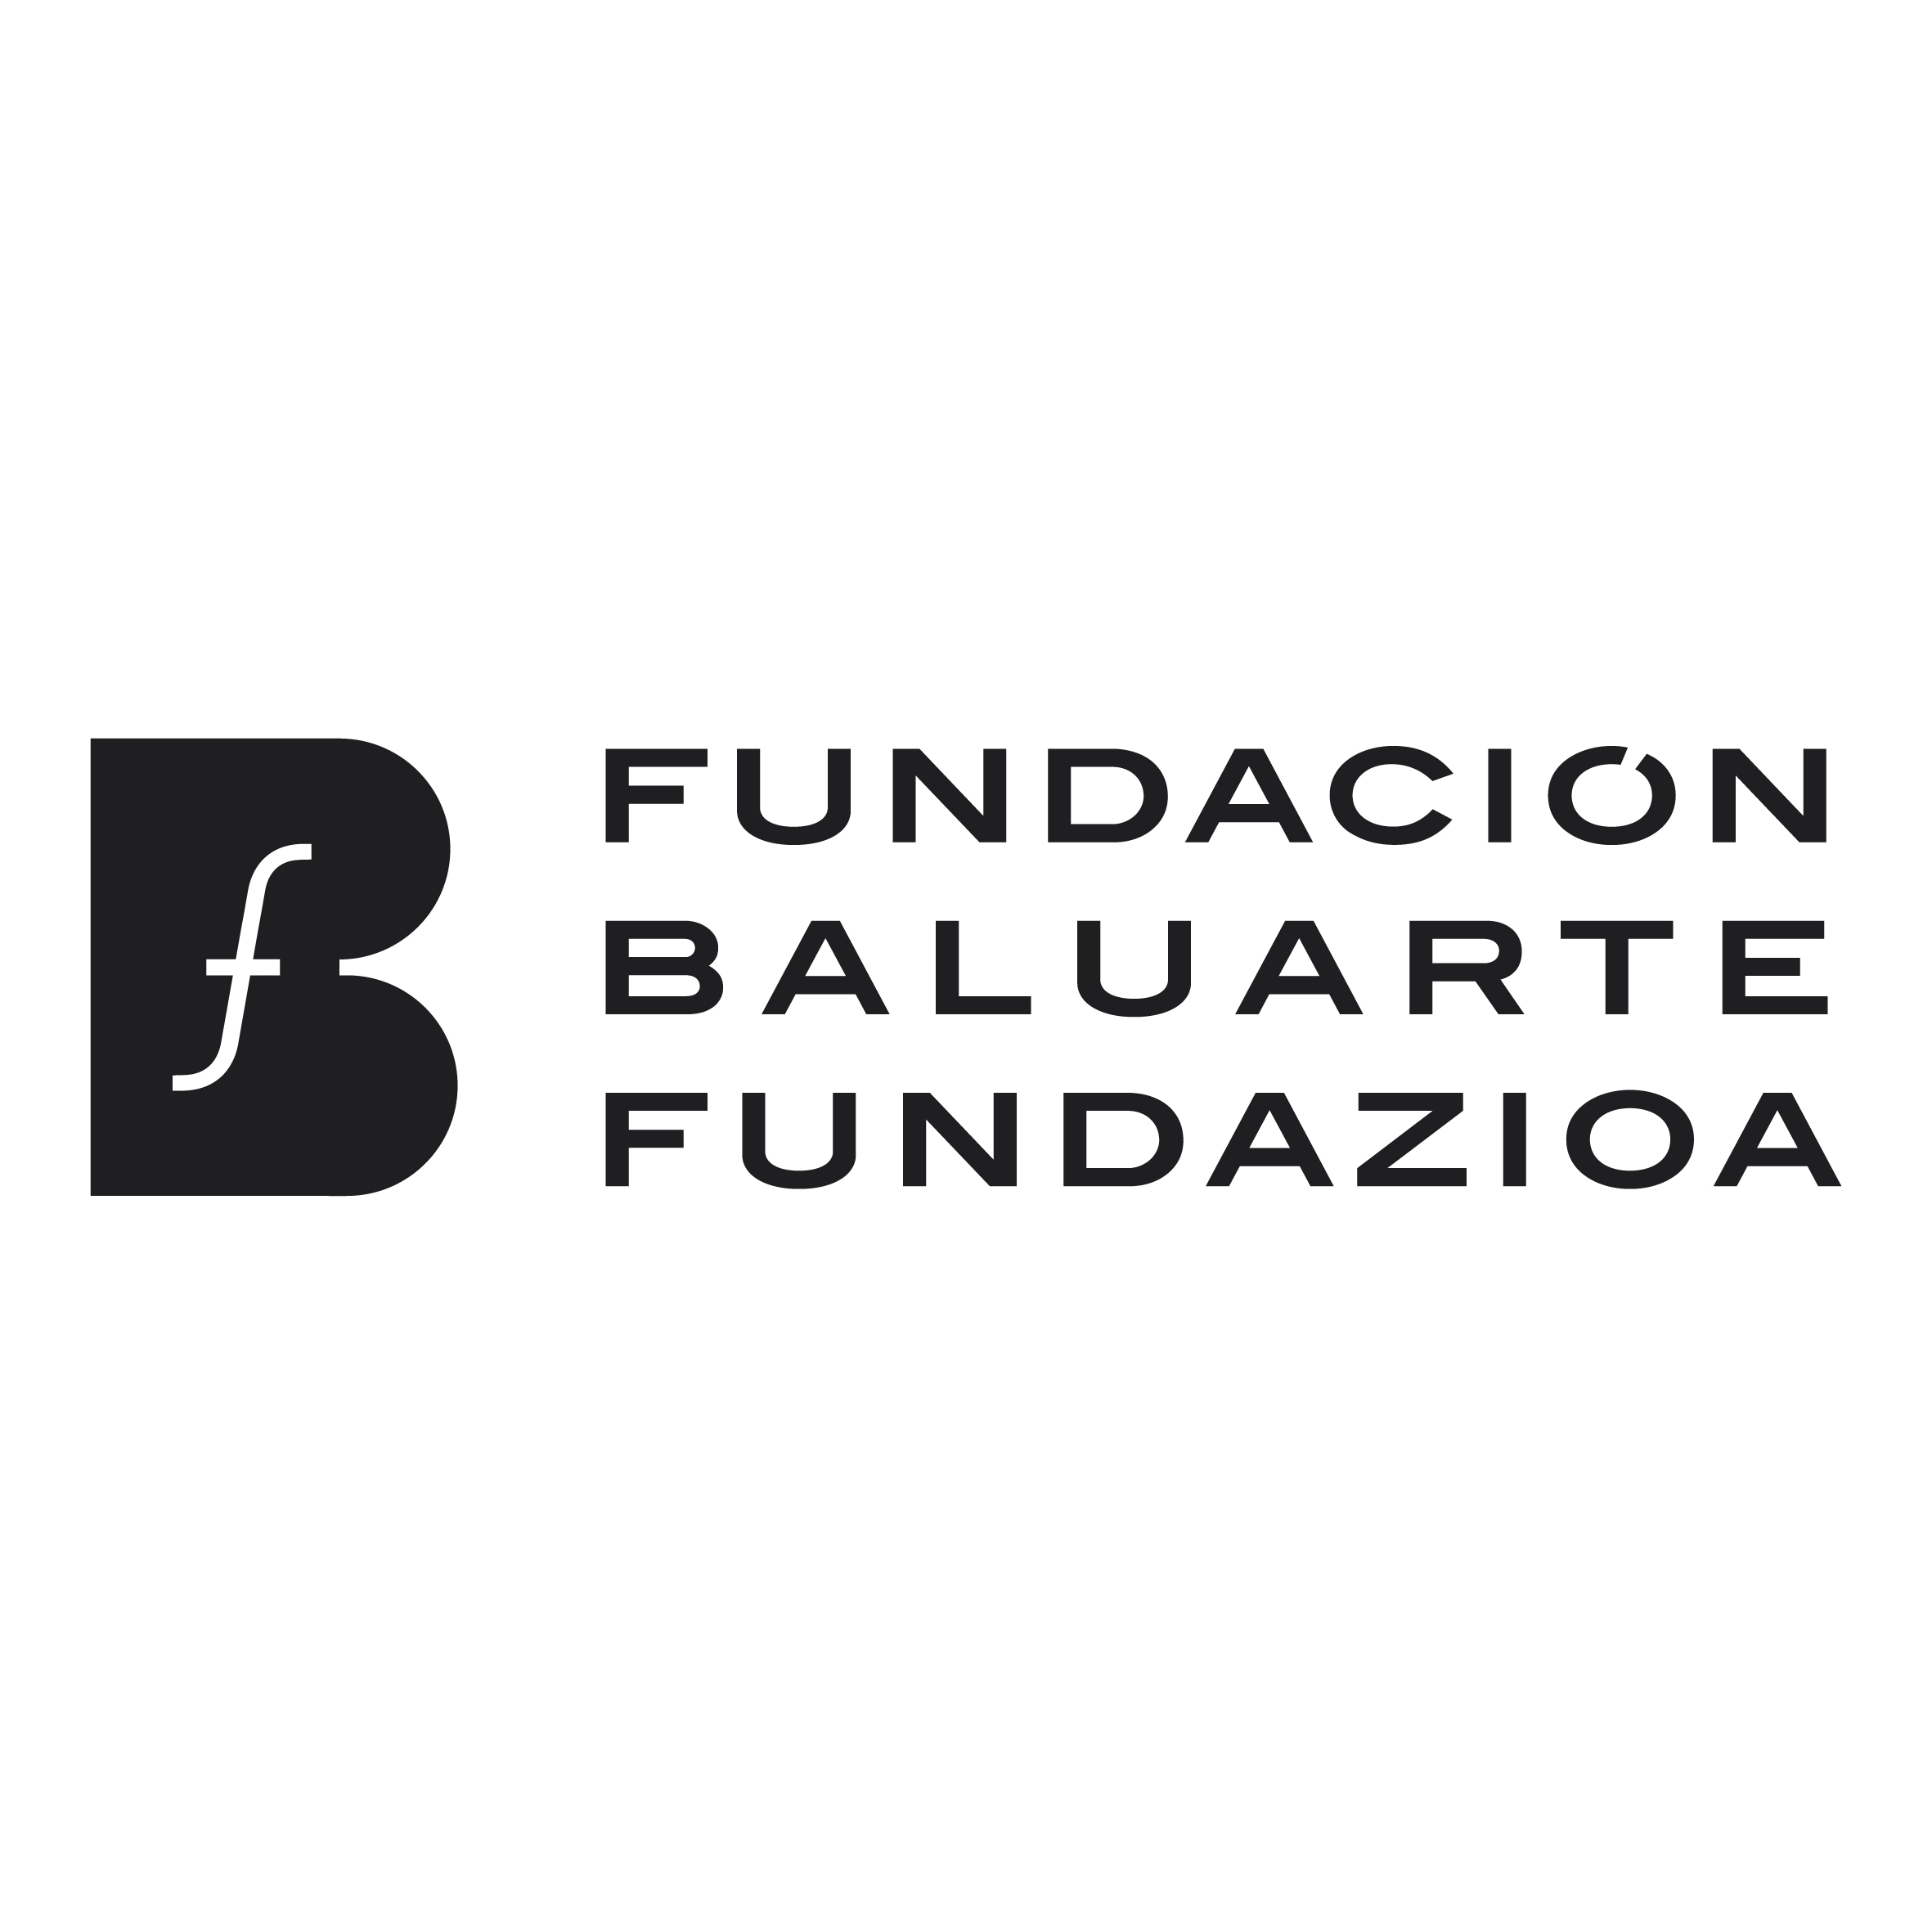 (c) Fundacionbaluarte.com